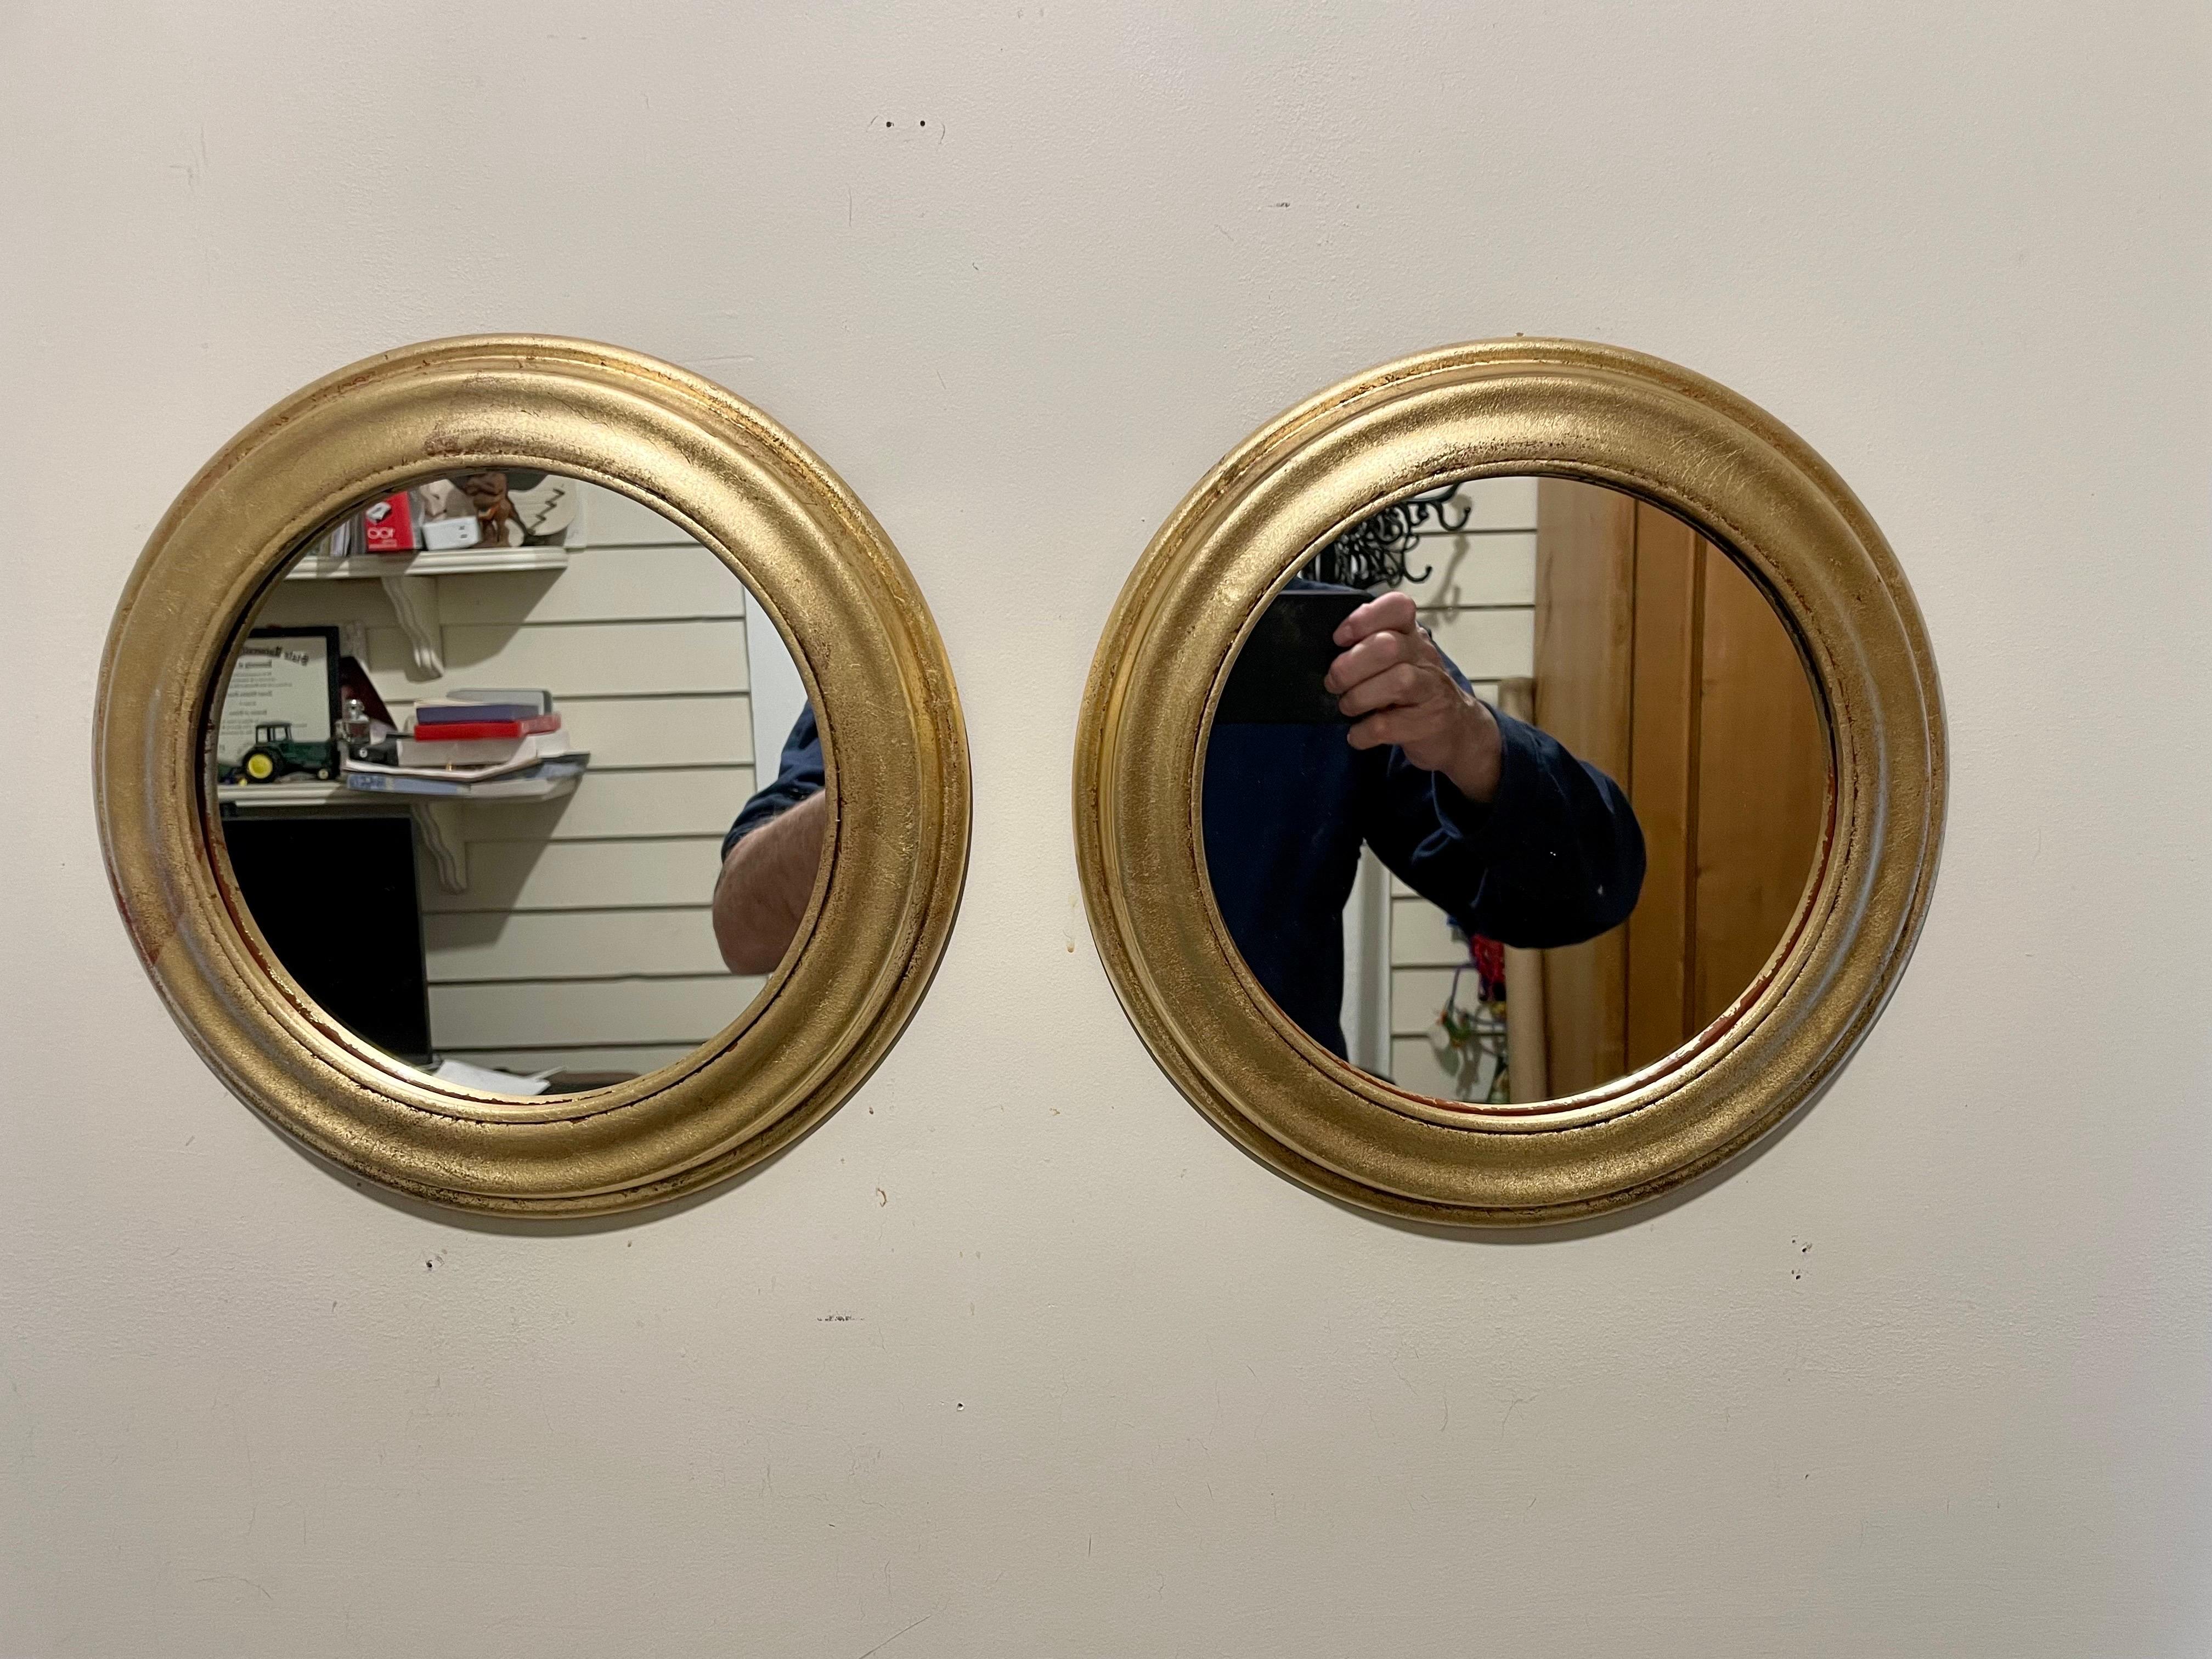 Paire de miroirs italiens en bois ronds et dorés. Chaque miroir mesure 11